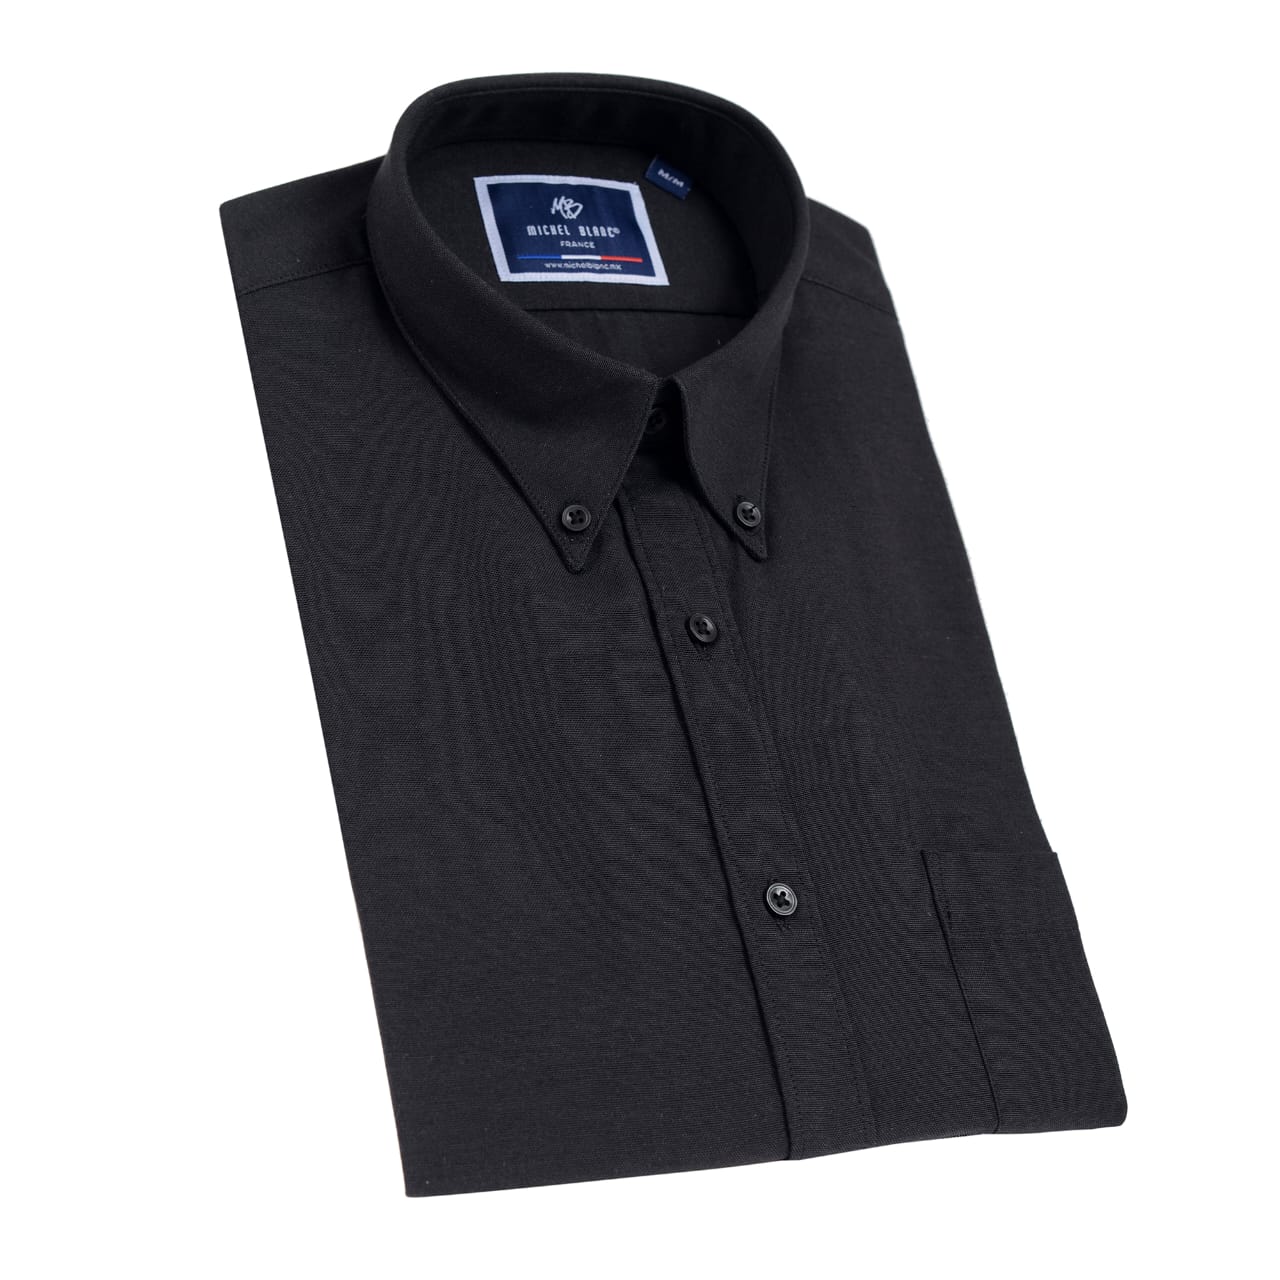 Camisa manga larga botón down negro